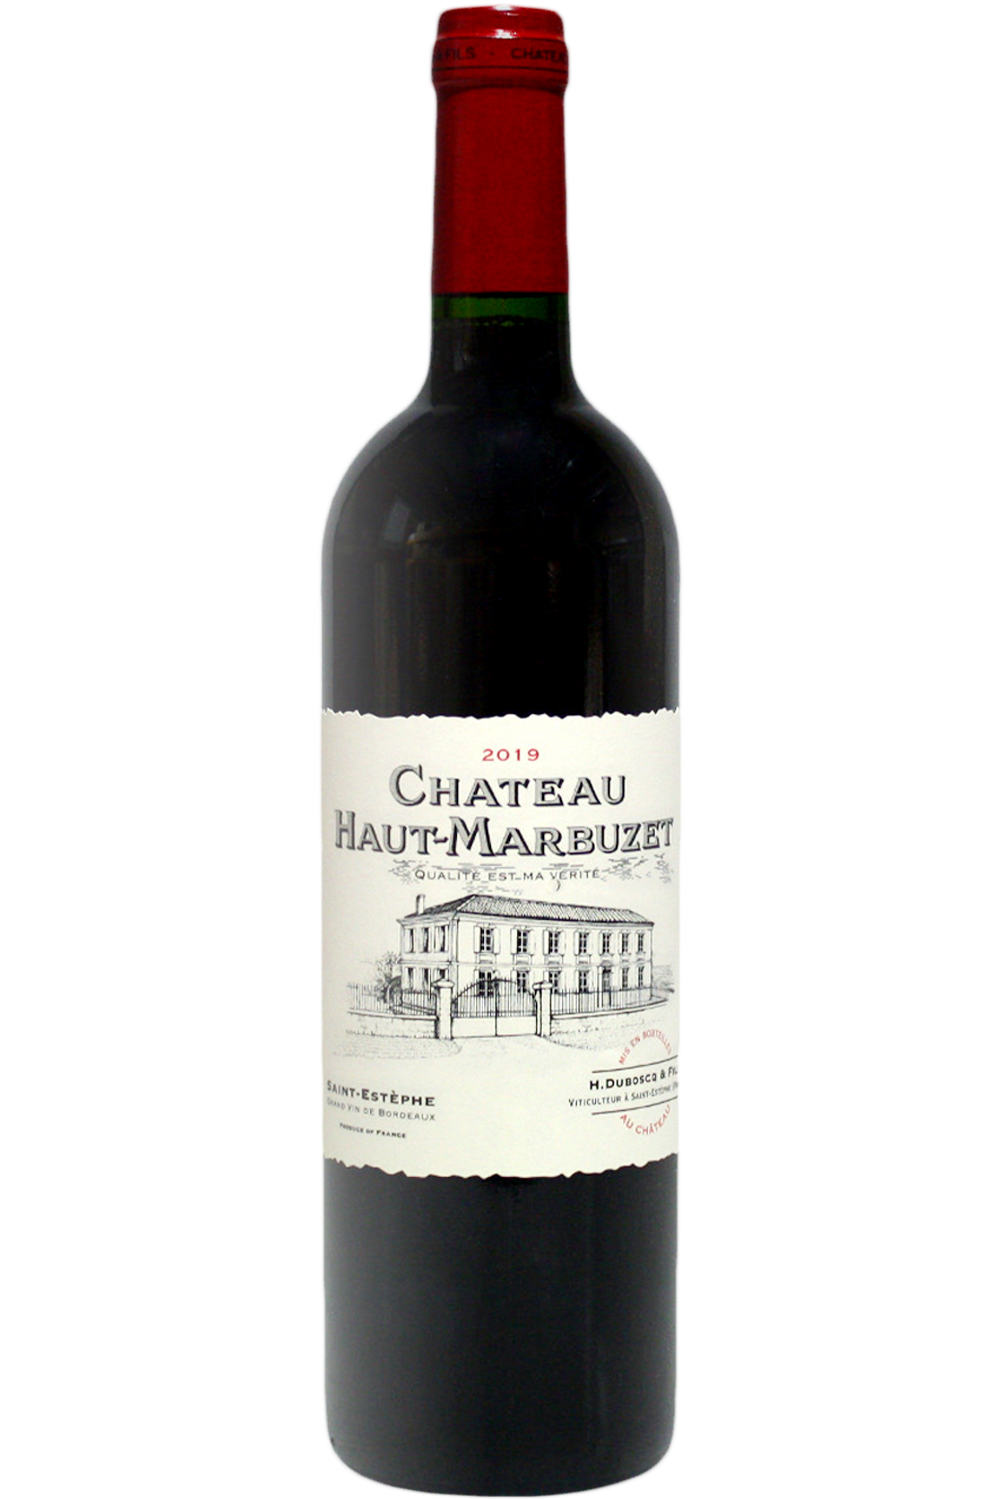 WineVins Chateau Haut Marbuzet 2019